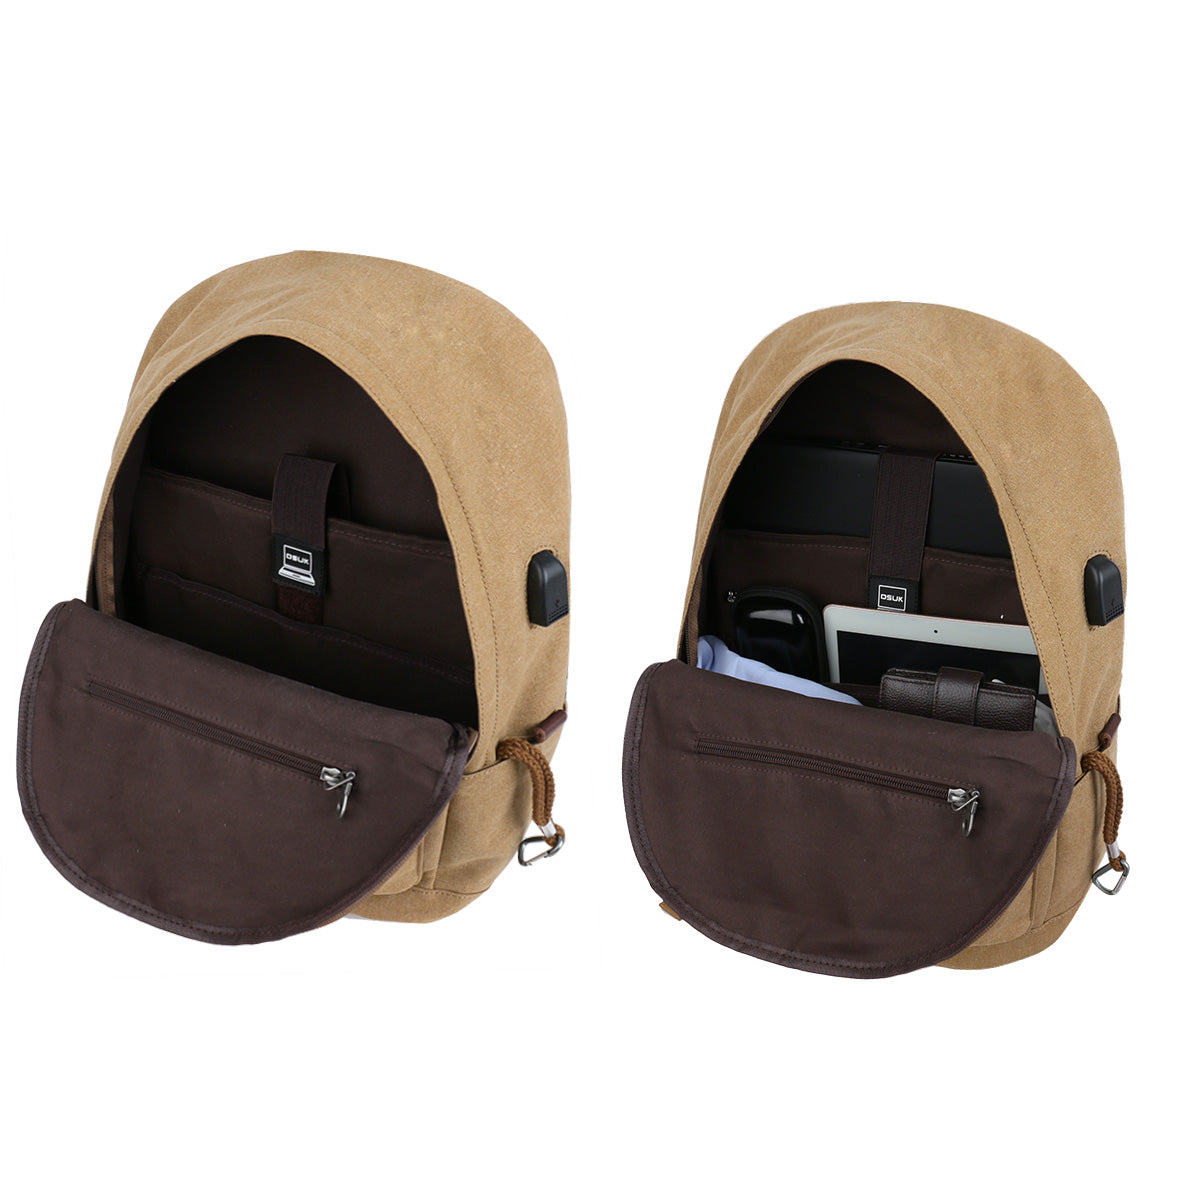 LYDC Functional Backpack Bag